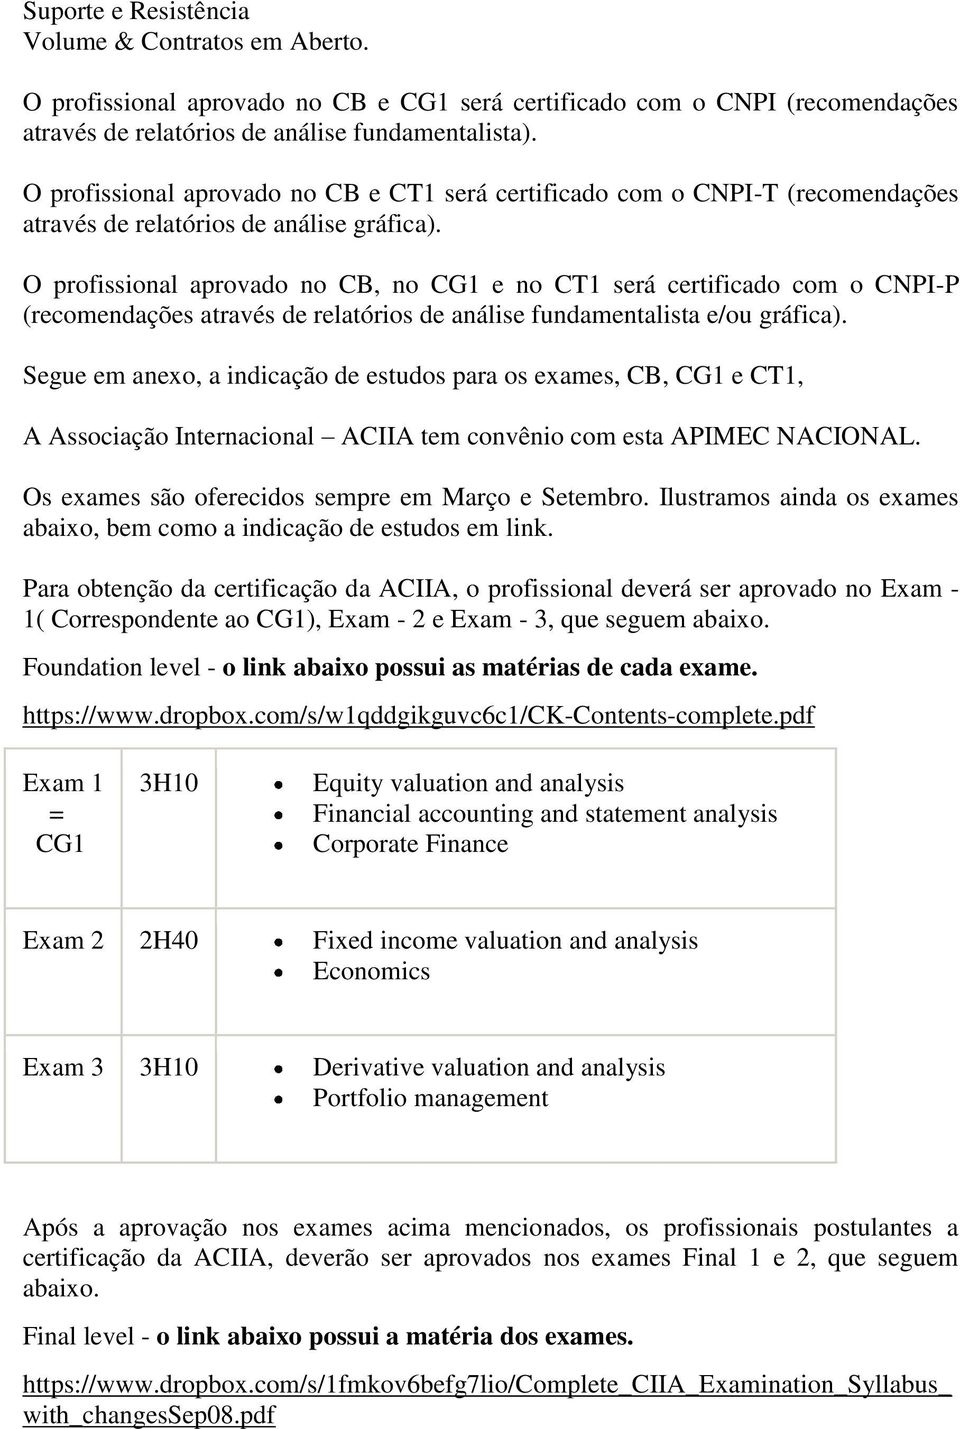 O profissional aprovado no CB, no CG1 e no CT1 será certificado com o CNPI-P (recomendações através de relatórios de análise fundamentalista e/ou gráfica).